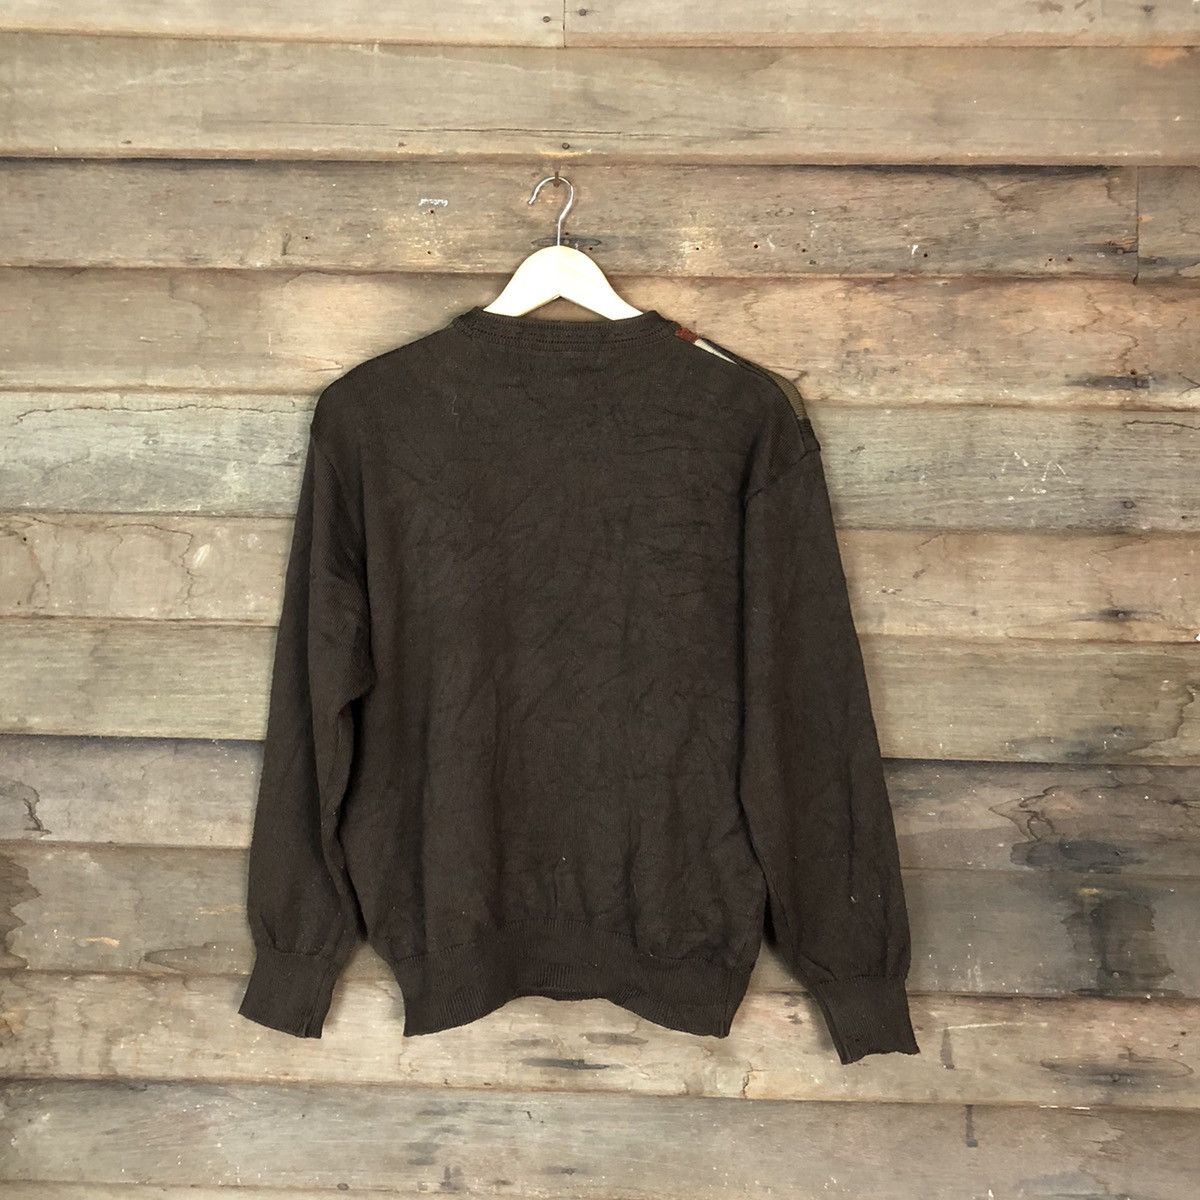 Golden Bear Golden Bear Brown checkered sweatshirt Knitwear #H076 Size US M / EU 48-50 / 2 - 10 Preview